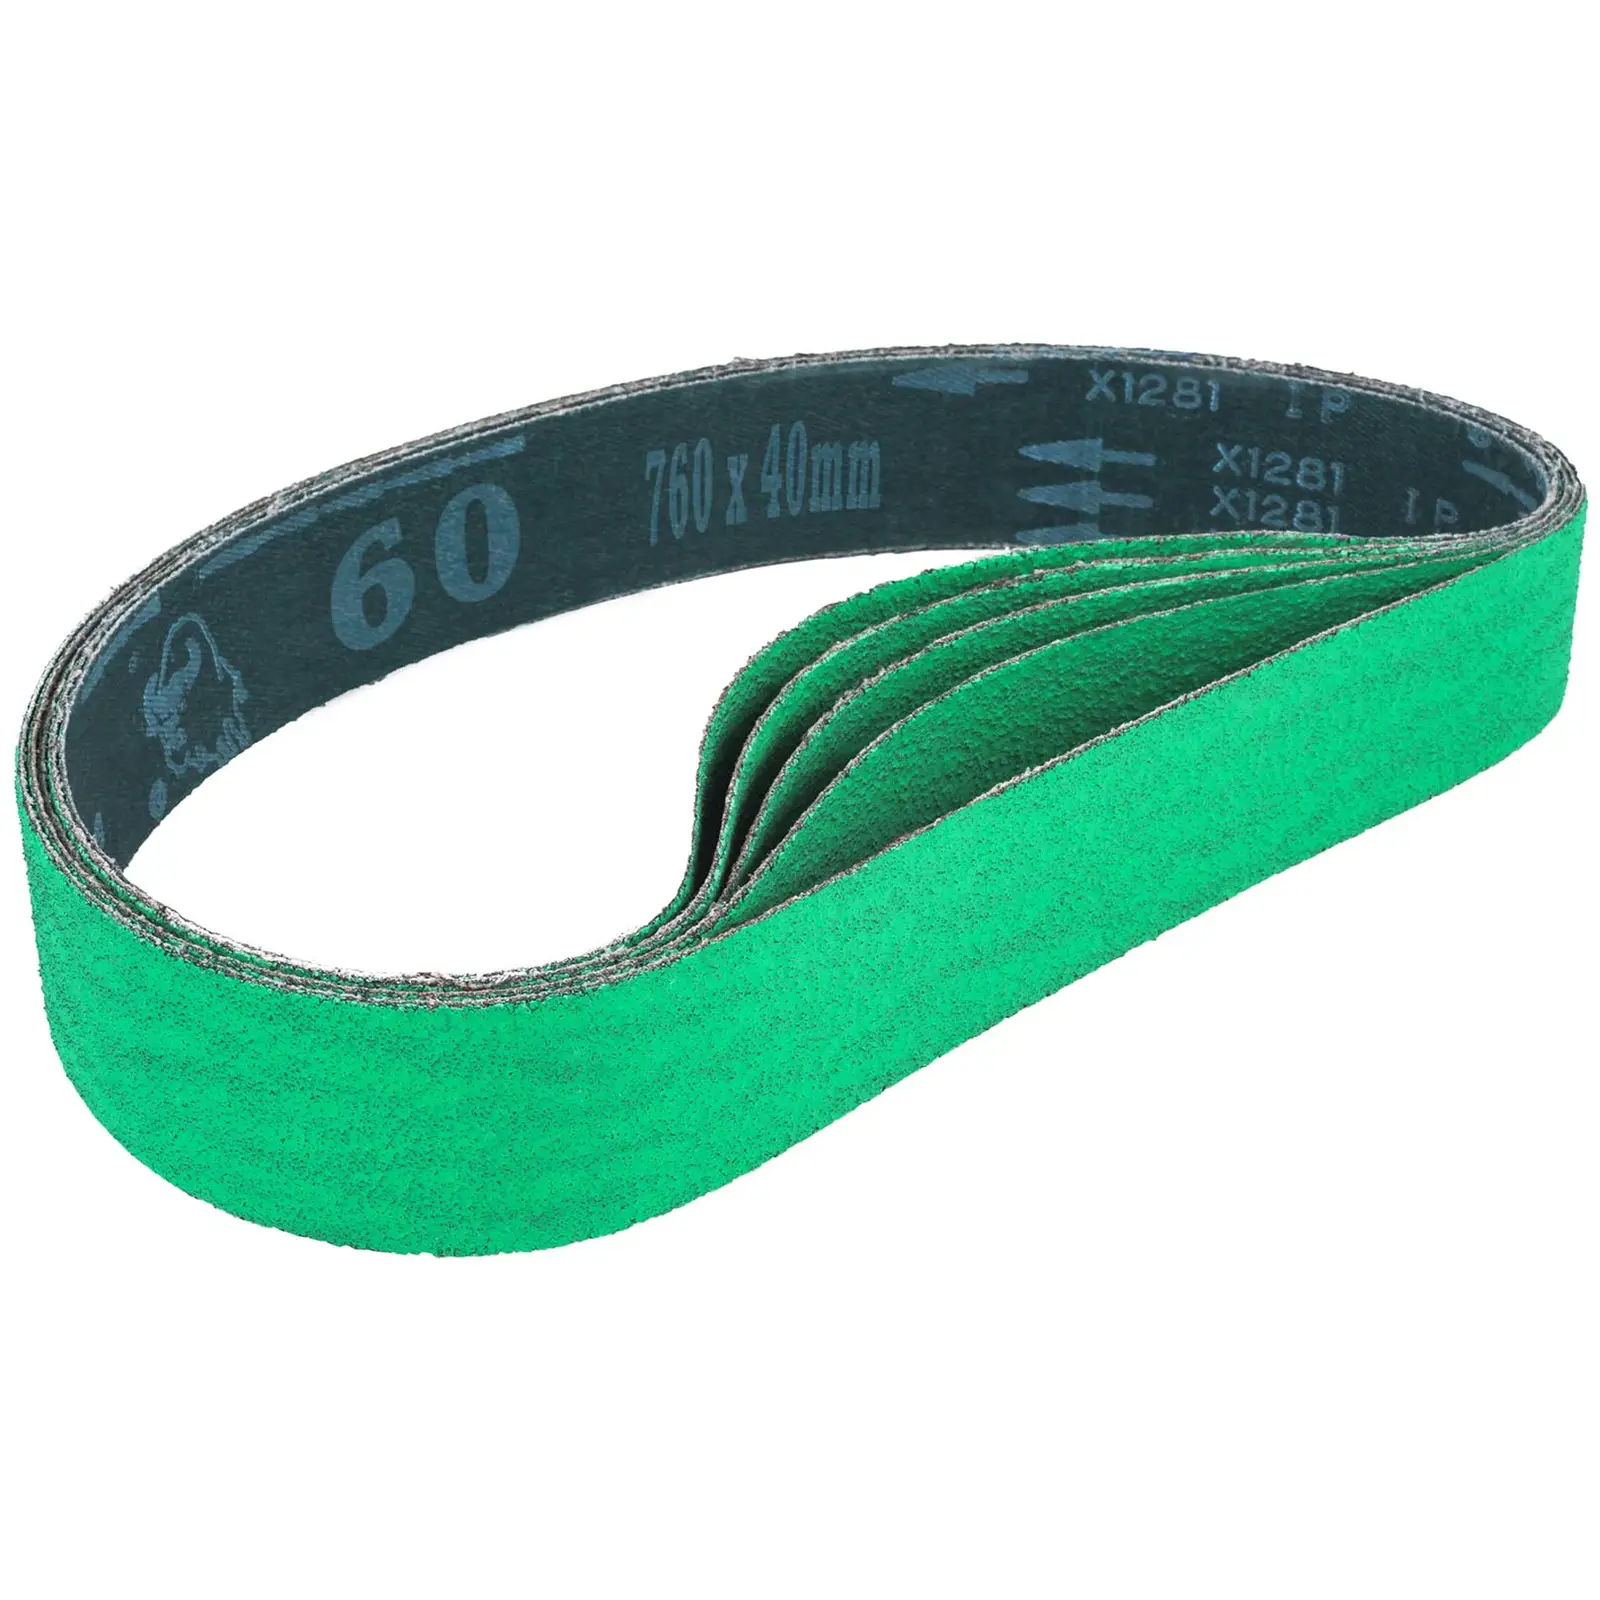 Zirconia Sanding Belt - 760 mm - 60 graining